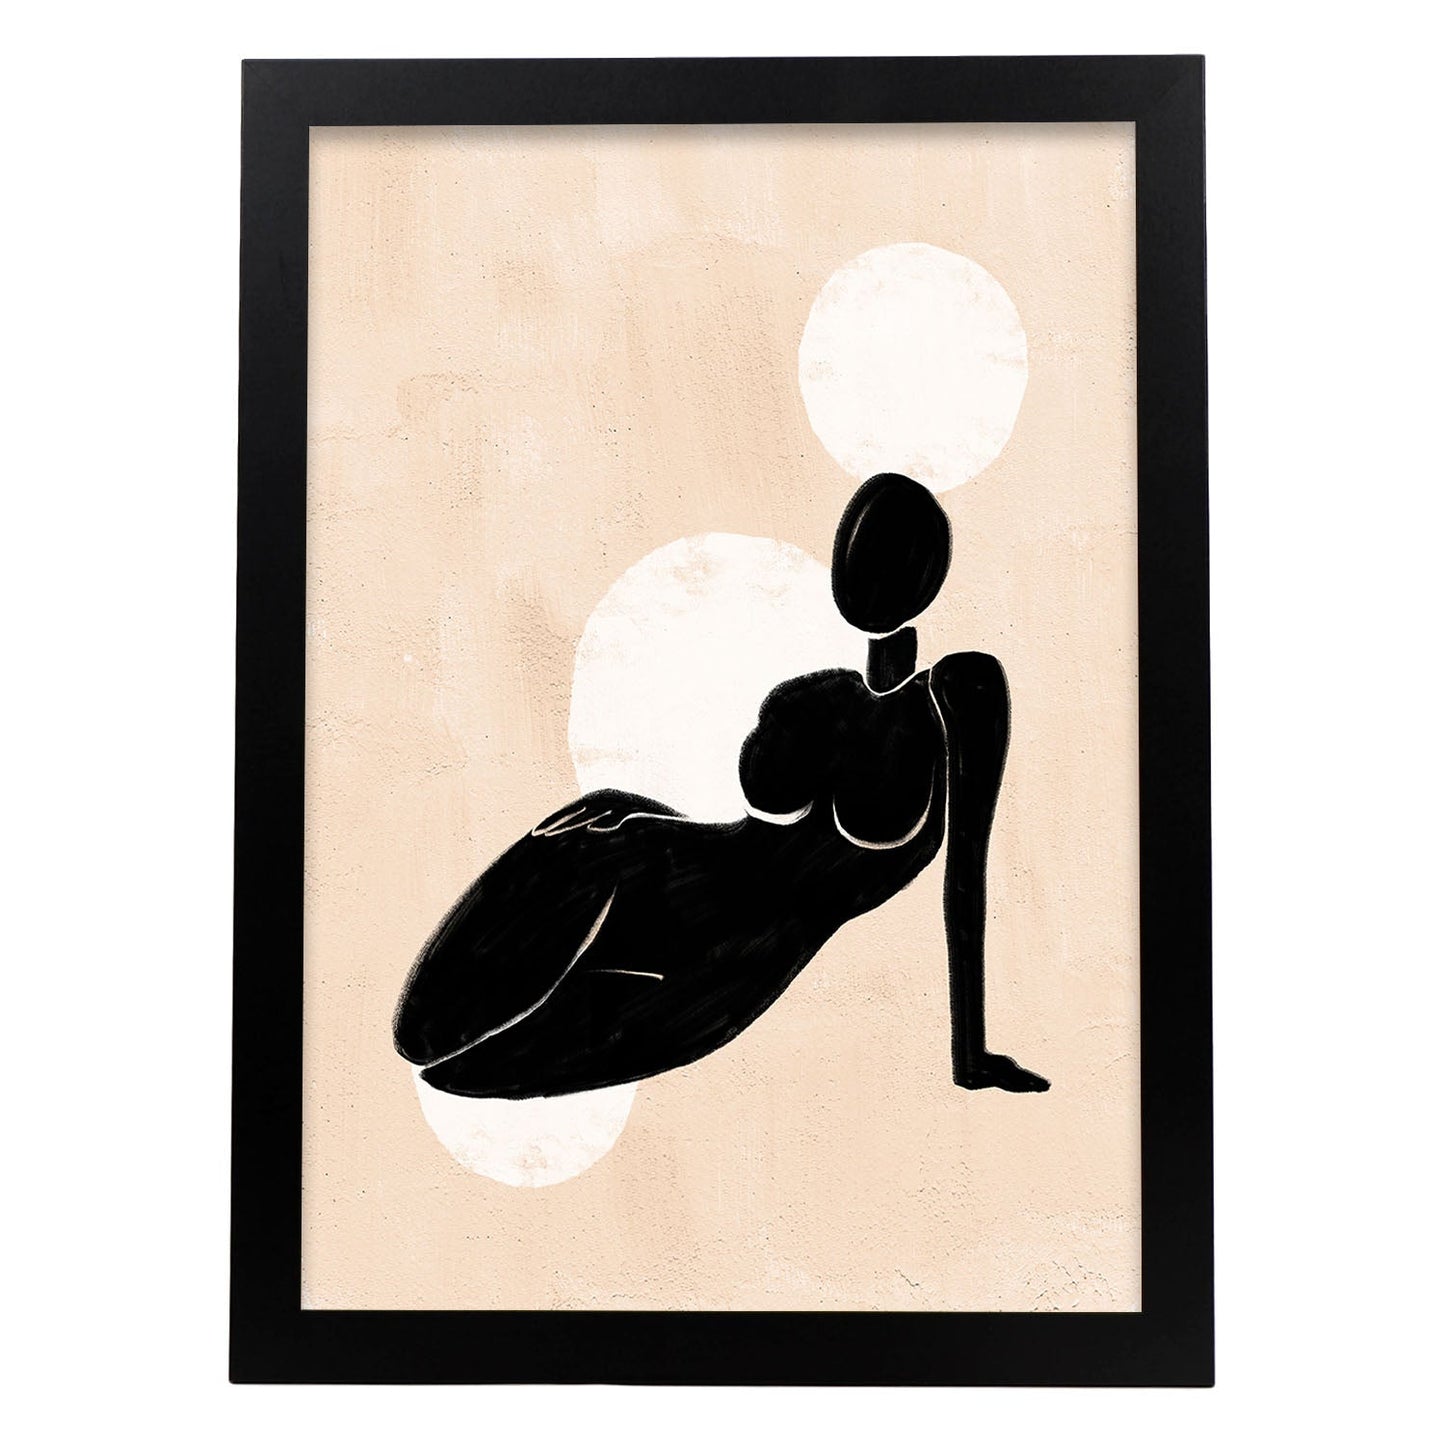 Poster con ilustracion de mujer. Dibujos con formas, caras, cuerpos y gestos de mujeres. 'Mujeres 8'.-Artwork-Nacnic-A3-Marco Negro-Nacnic Estudio SL